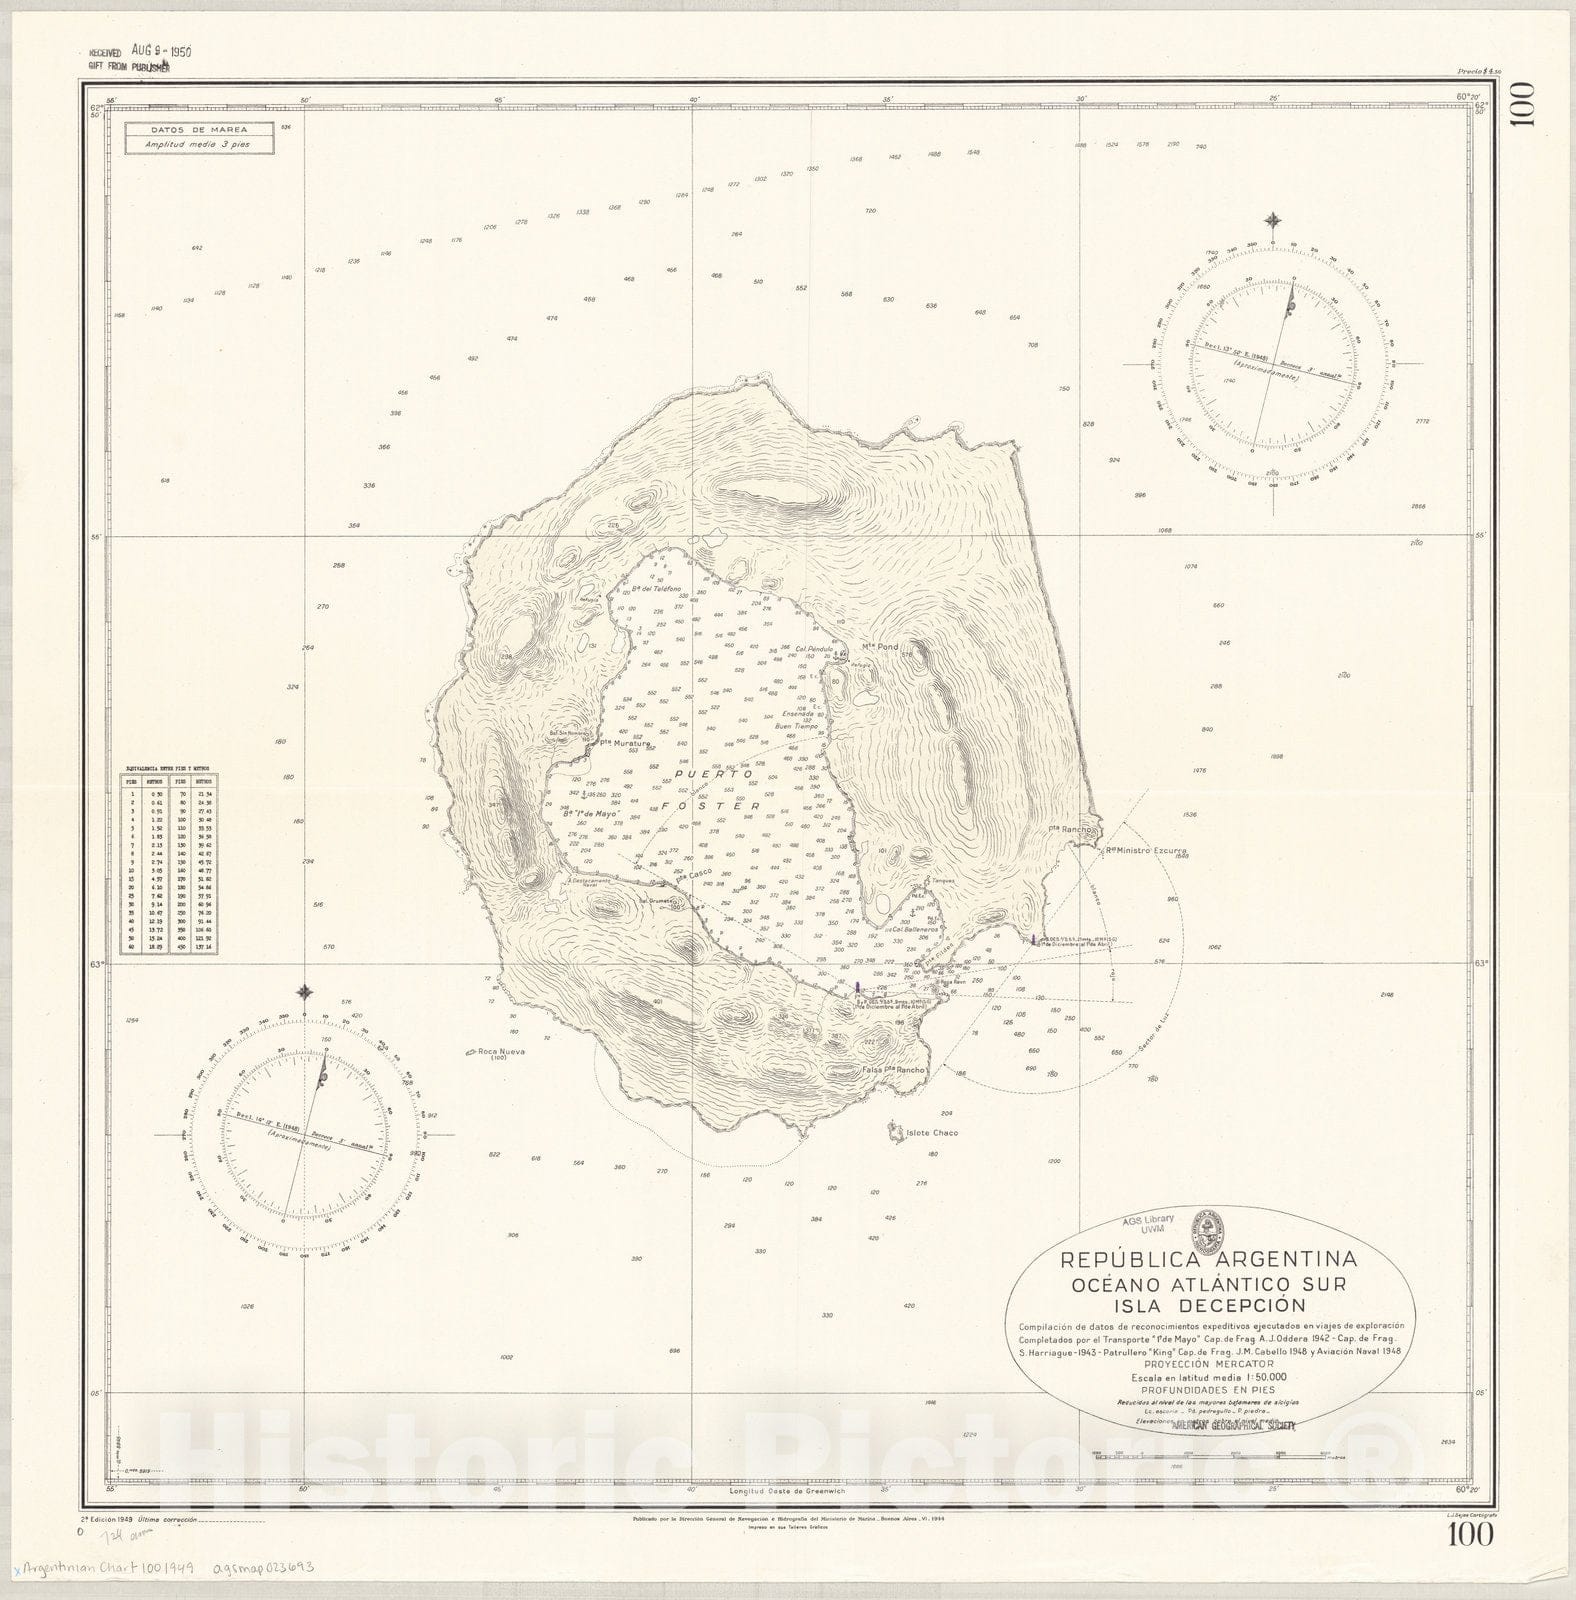 Map : Deception Island, Antarctica 1949, Republica Argentina, Oceano Atlantico sur, Isla Decepcion , Antique Vintage Reproduction